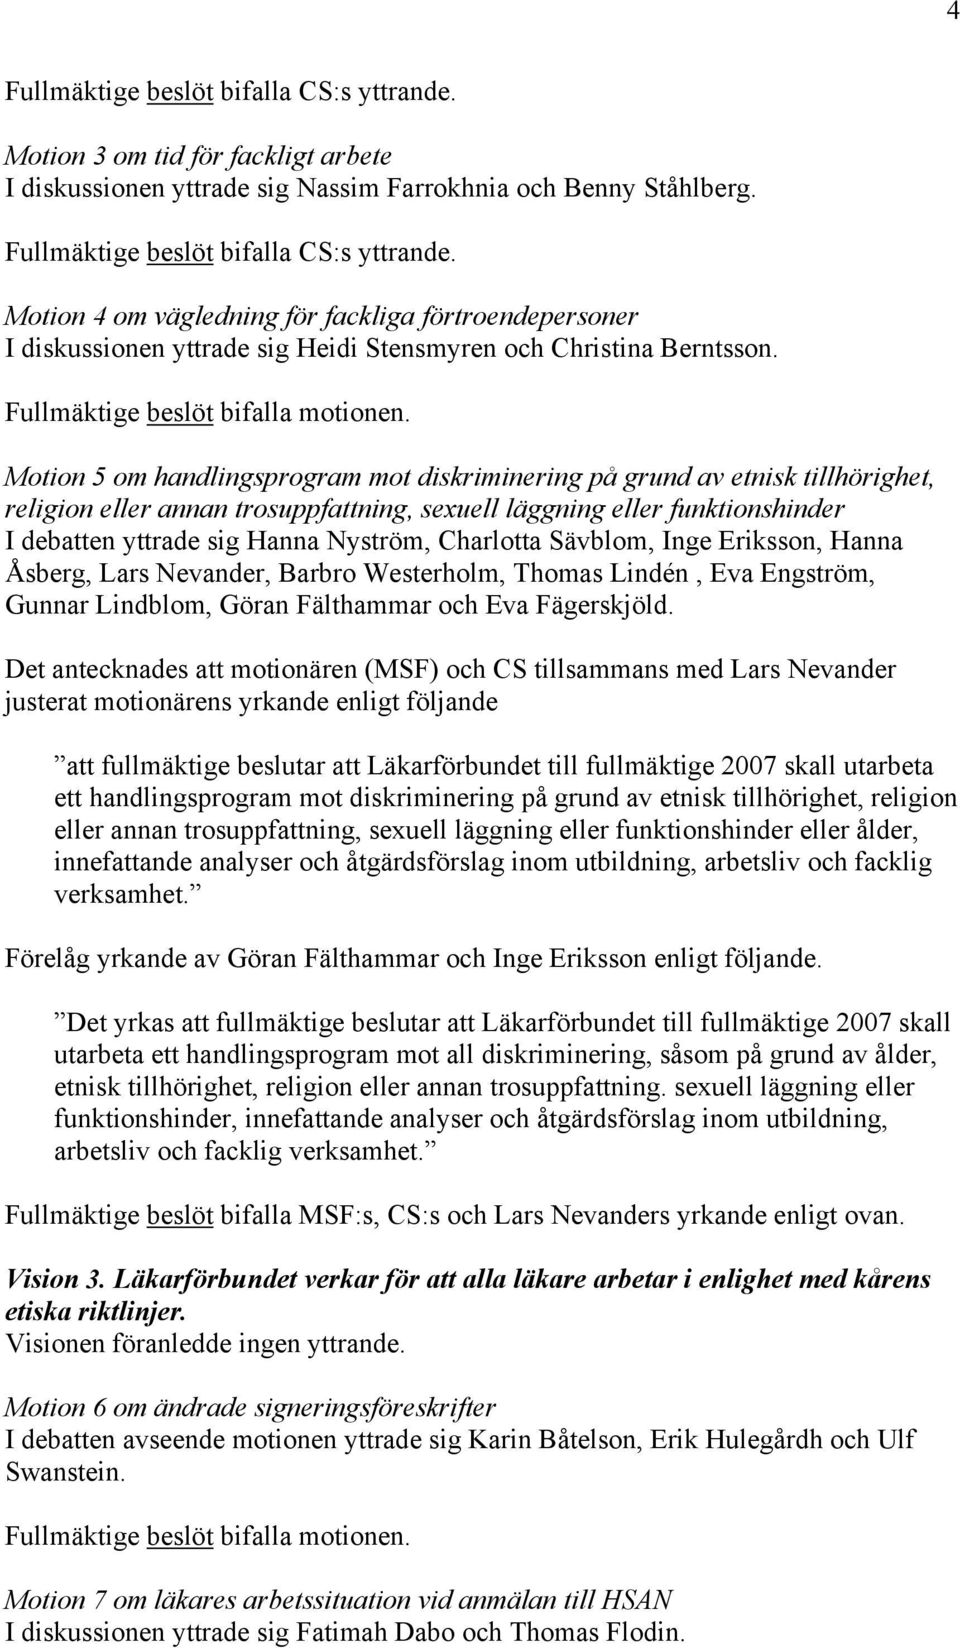 Motion 5 om handlingsprogram mot diskriminering på grund av etnisk tillhörighet, religion eller annan trosuppfattning, sexuell läggning eller funktionshinder I debatten yttrade sig Hanna Nyström,